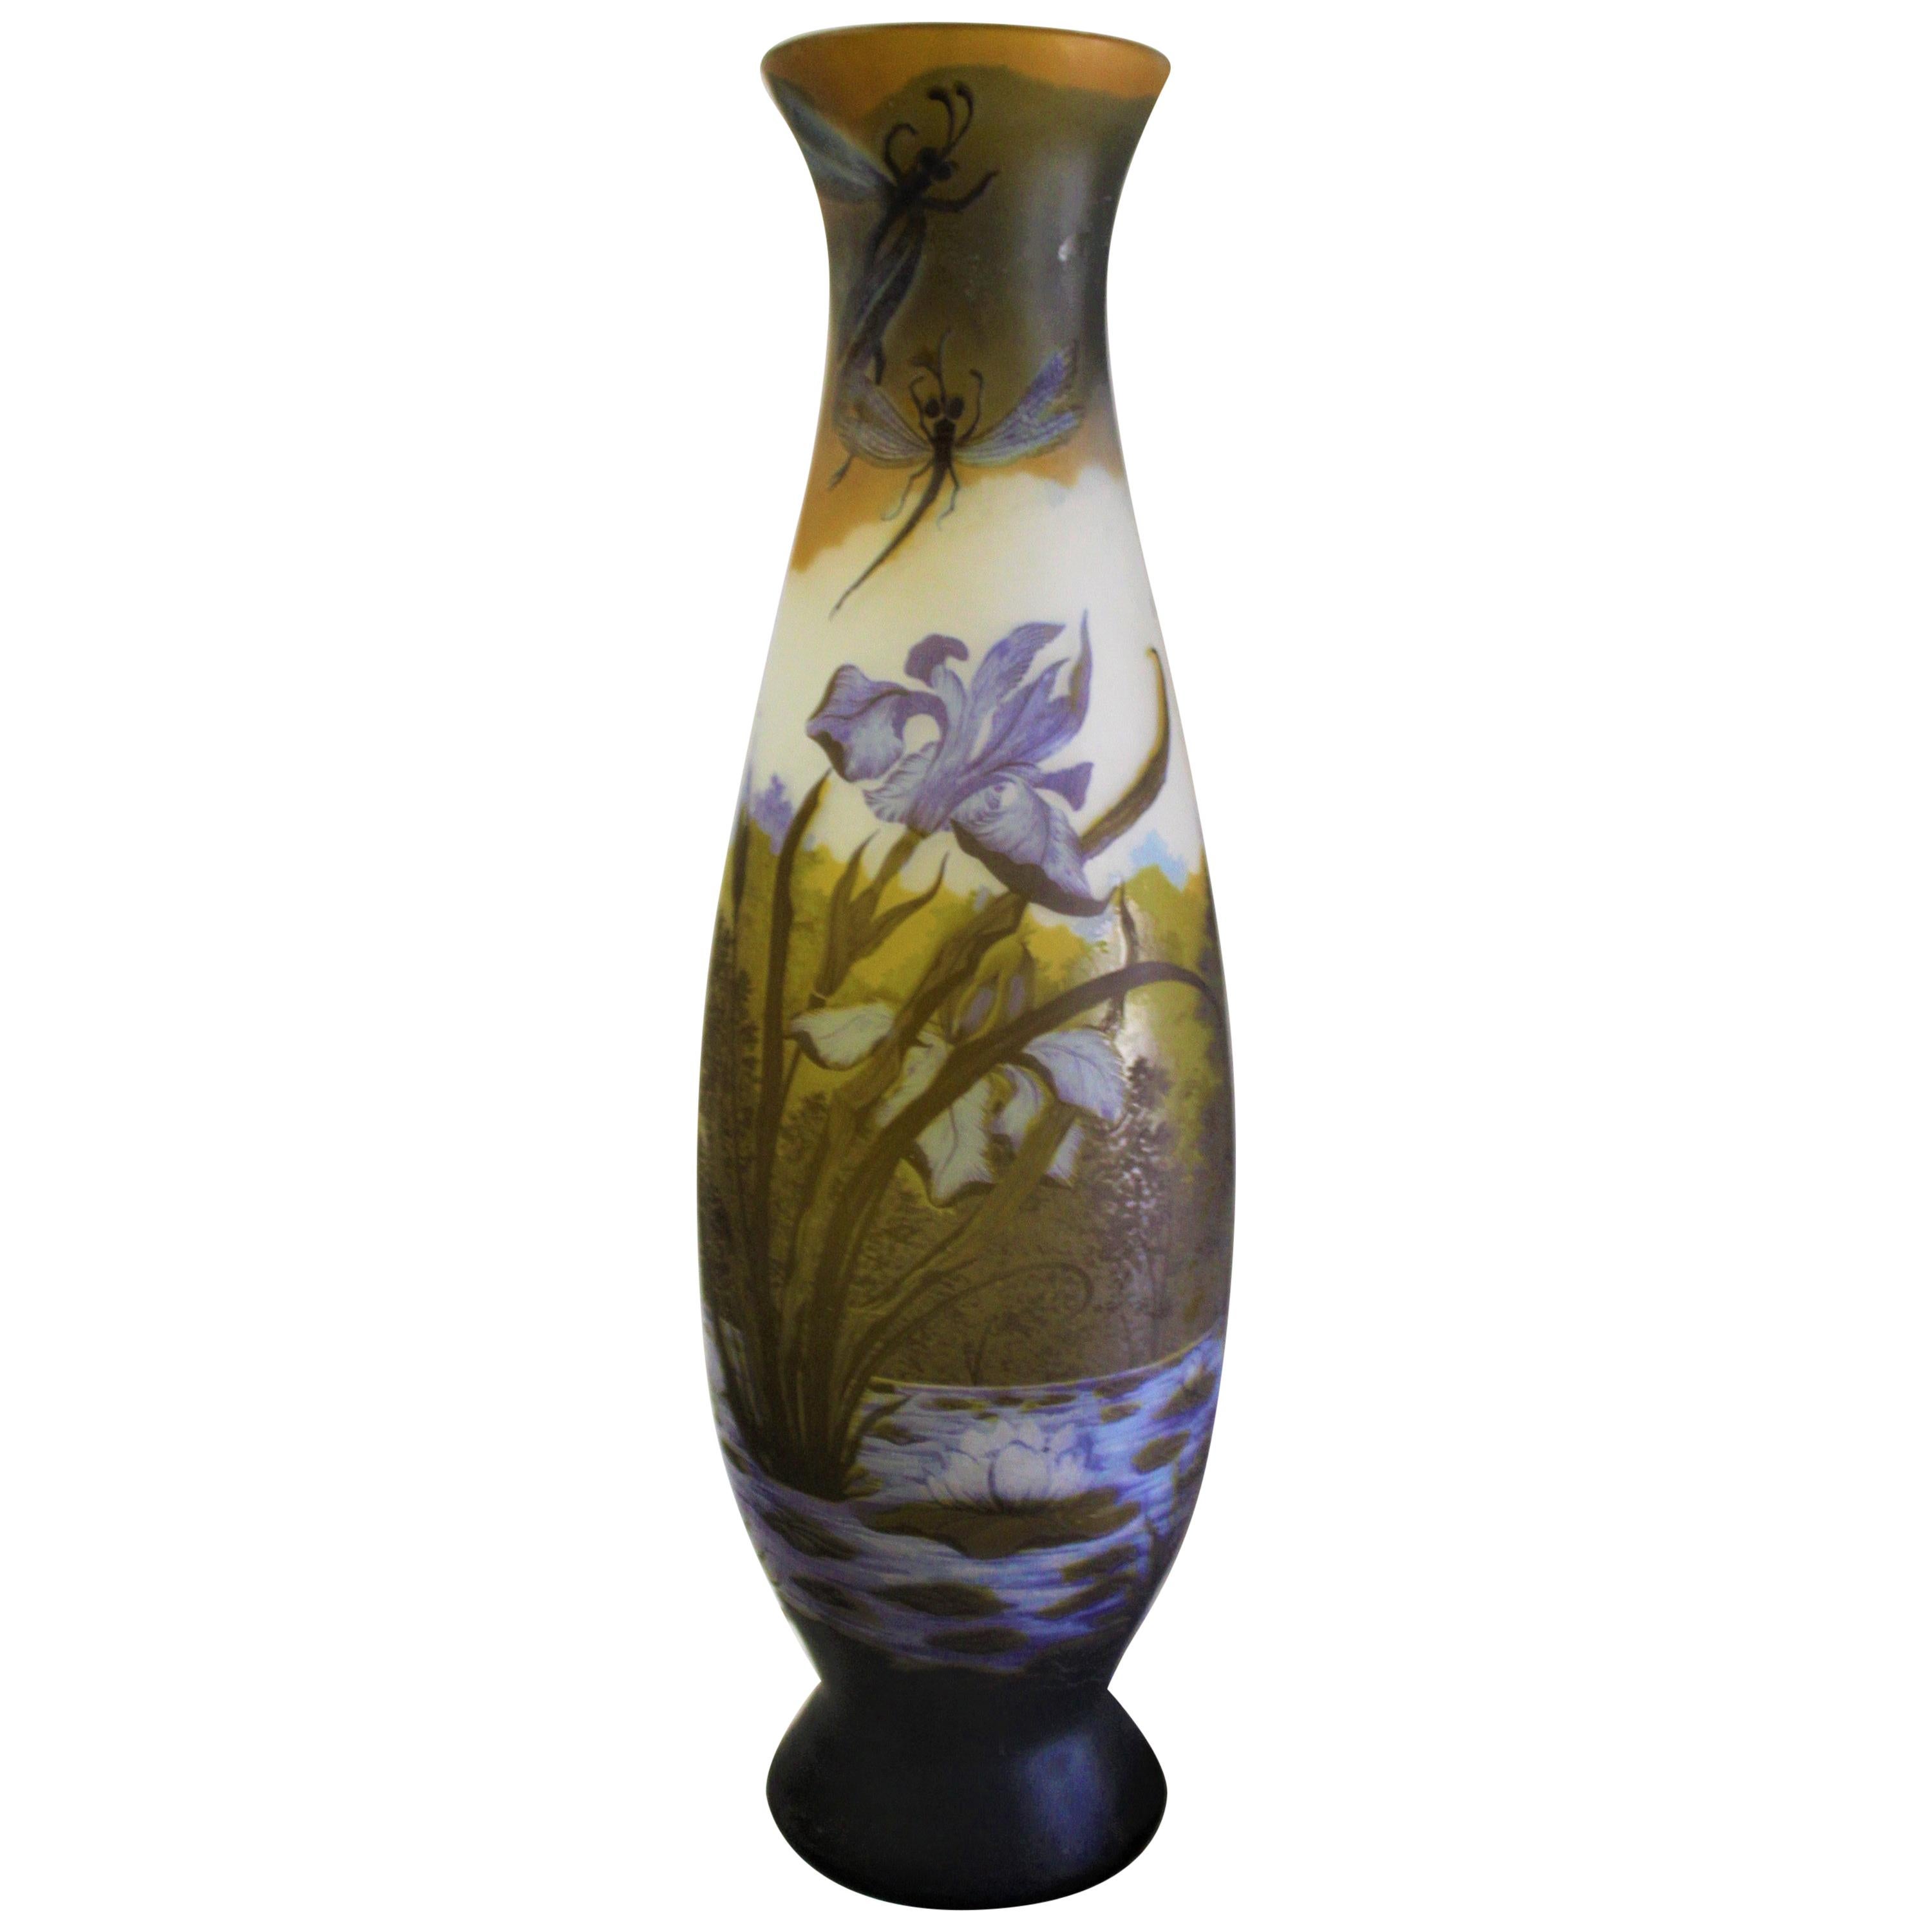 Très grand vase en verre de style Art Nouveau d'après Galle, très rare